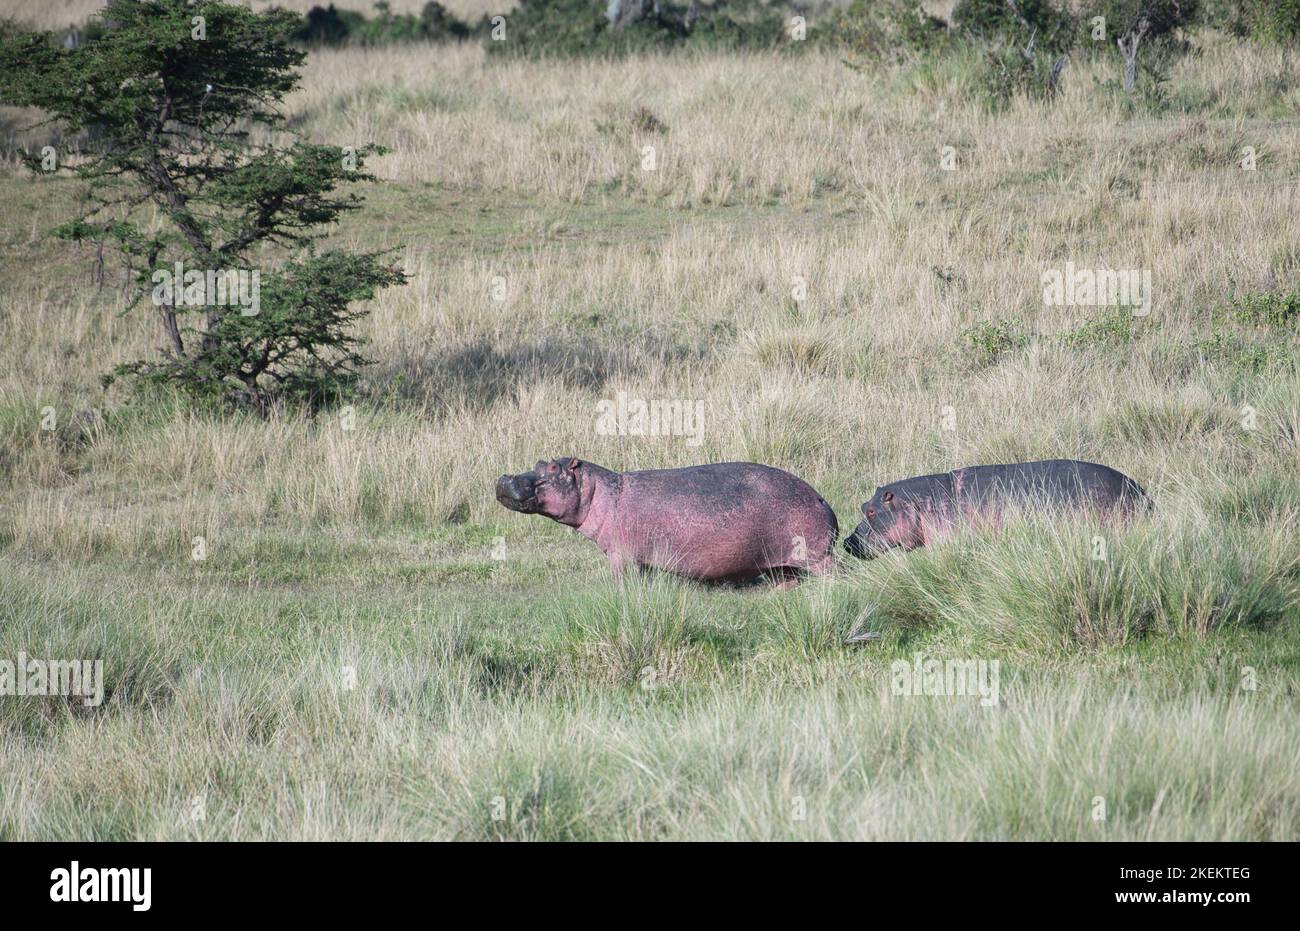 Deux hippopotames (Hippopotamus amphibius) retournent dans l'eau après avoir paître sur la terre Banque D'Images